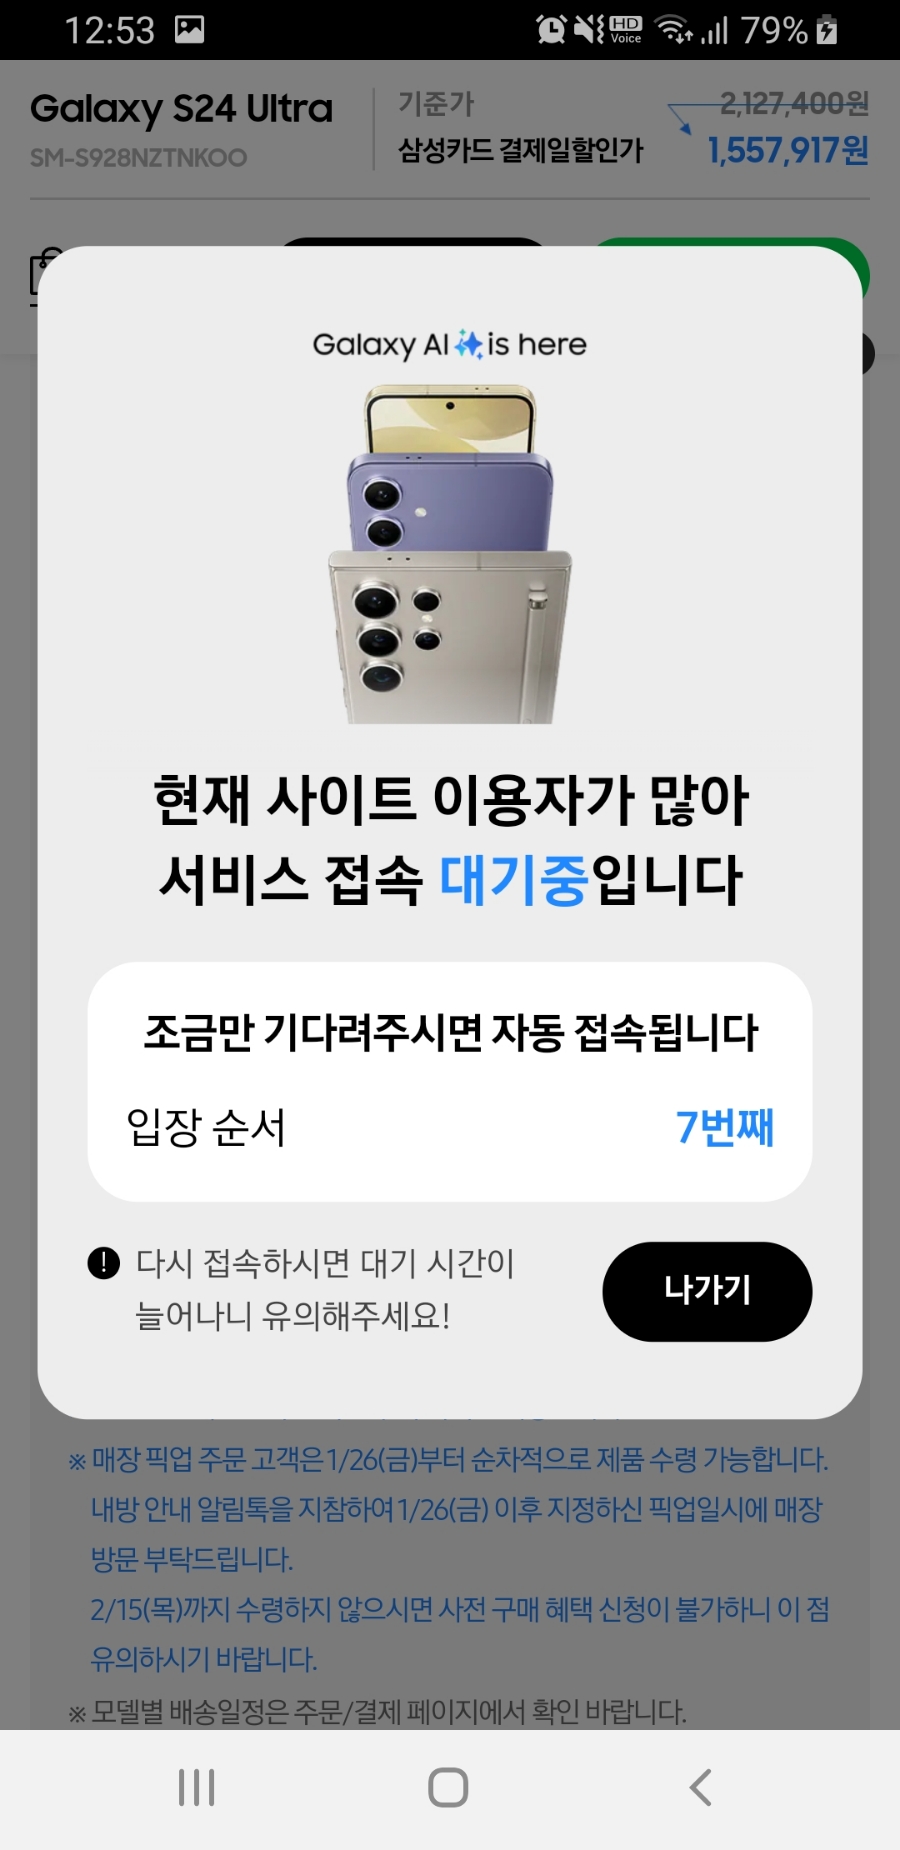 18~19) 갤럭시 S24 울트라 구매완. (feat. 갤캠스 기종별 자급제 가격)